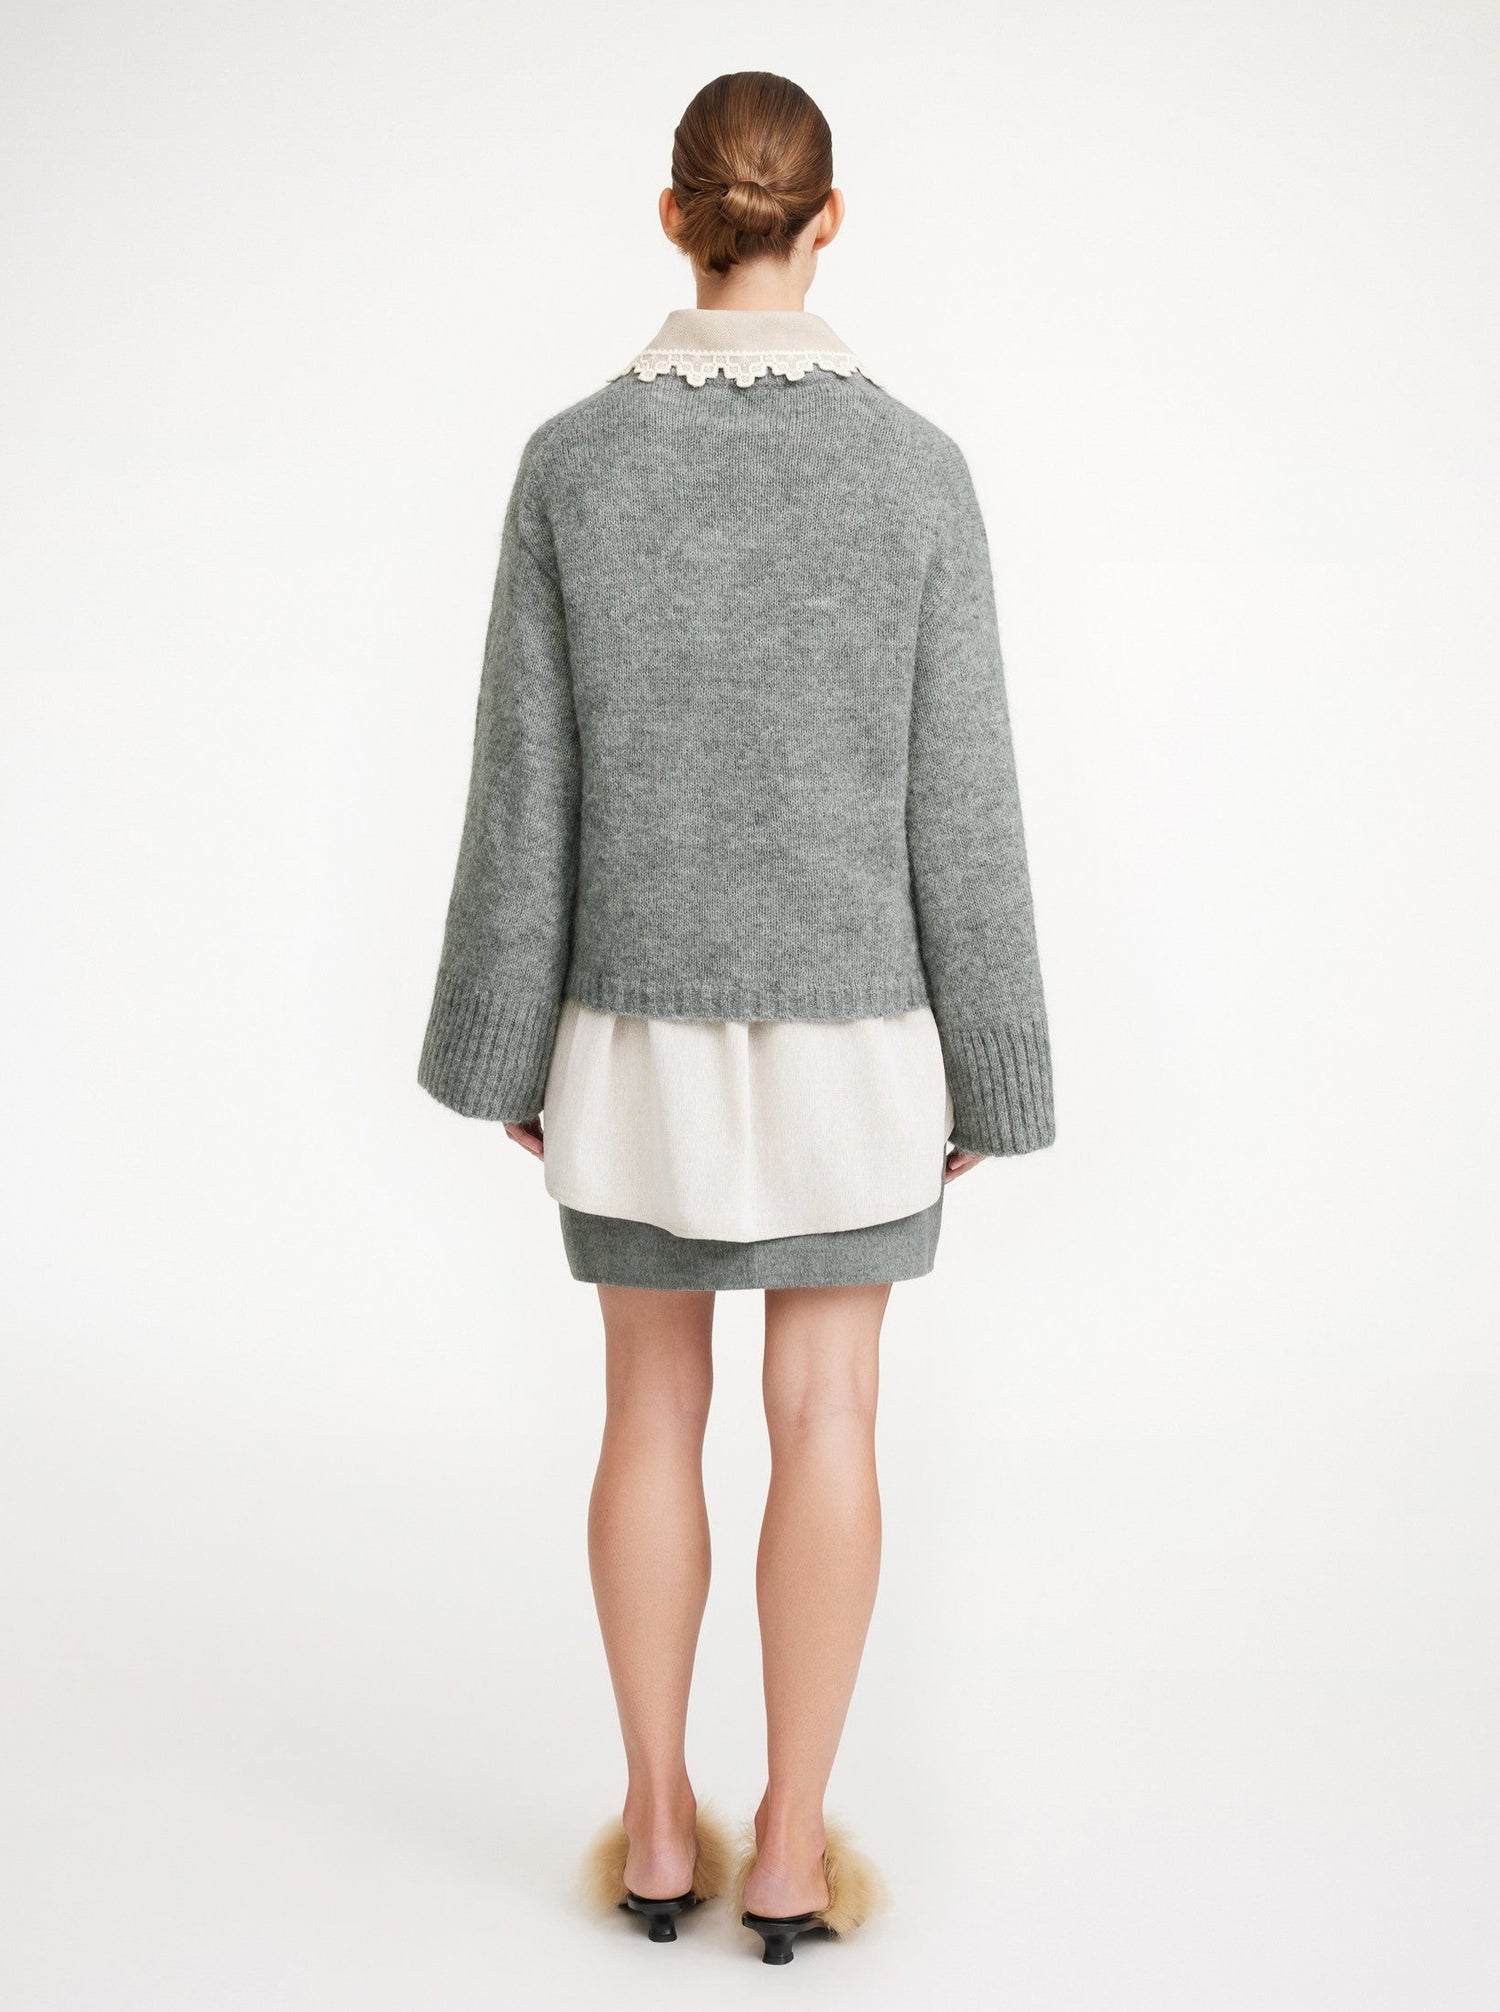 CIERRA knitted sweater, grey melange